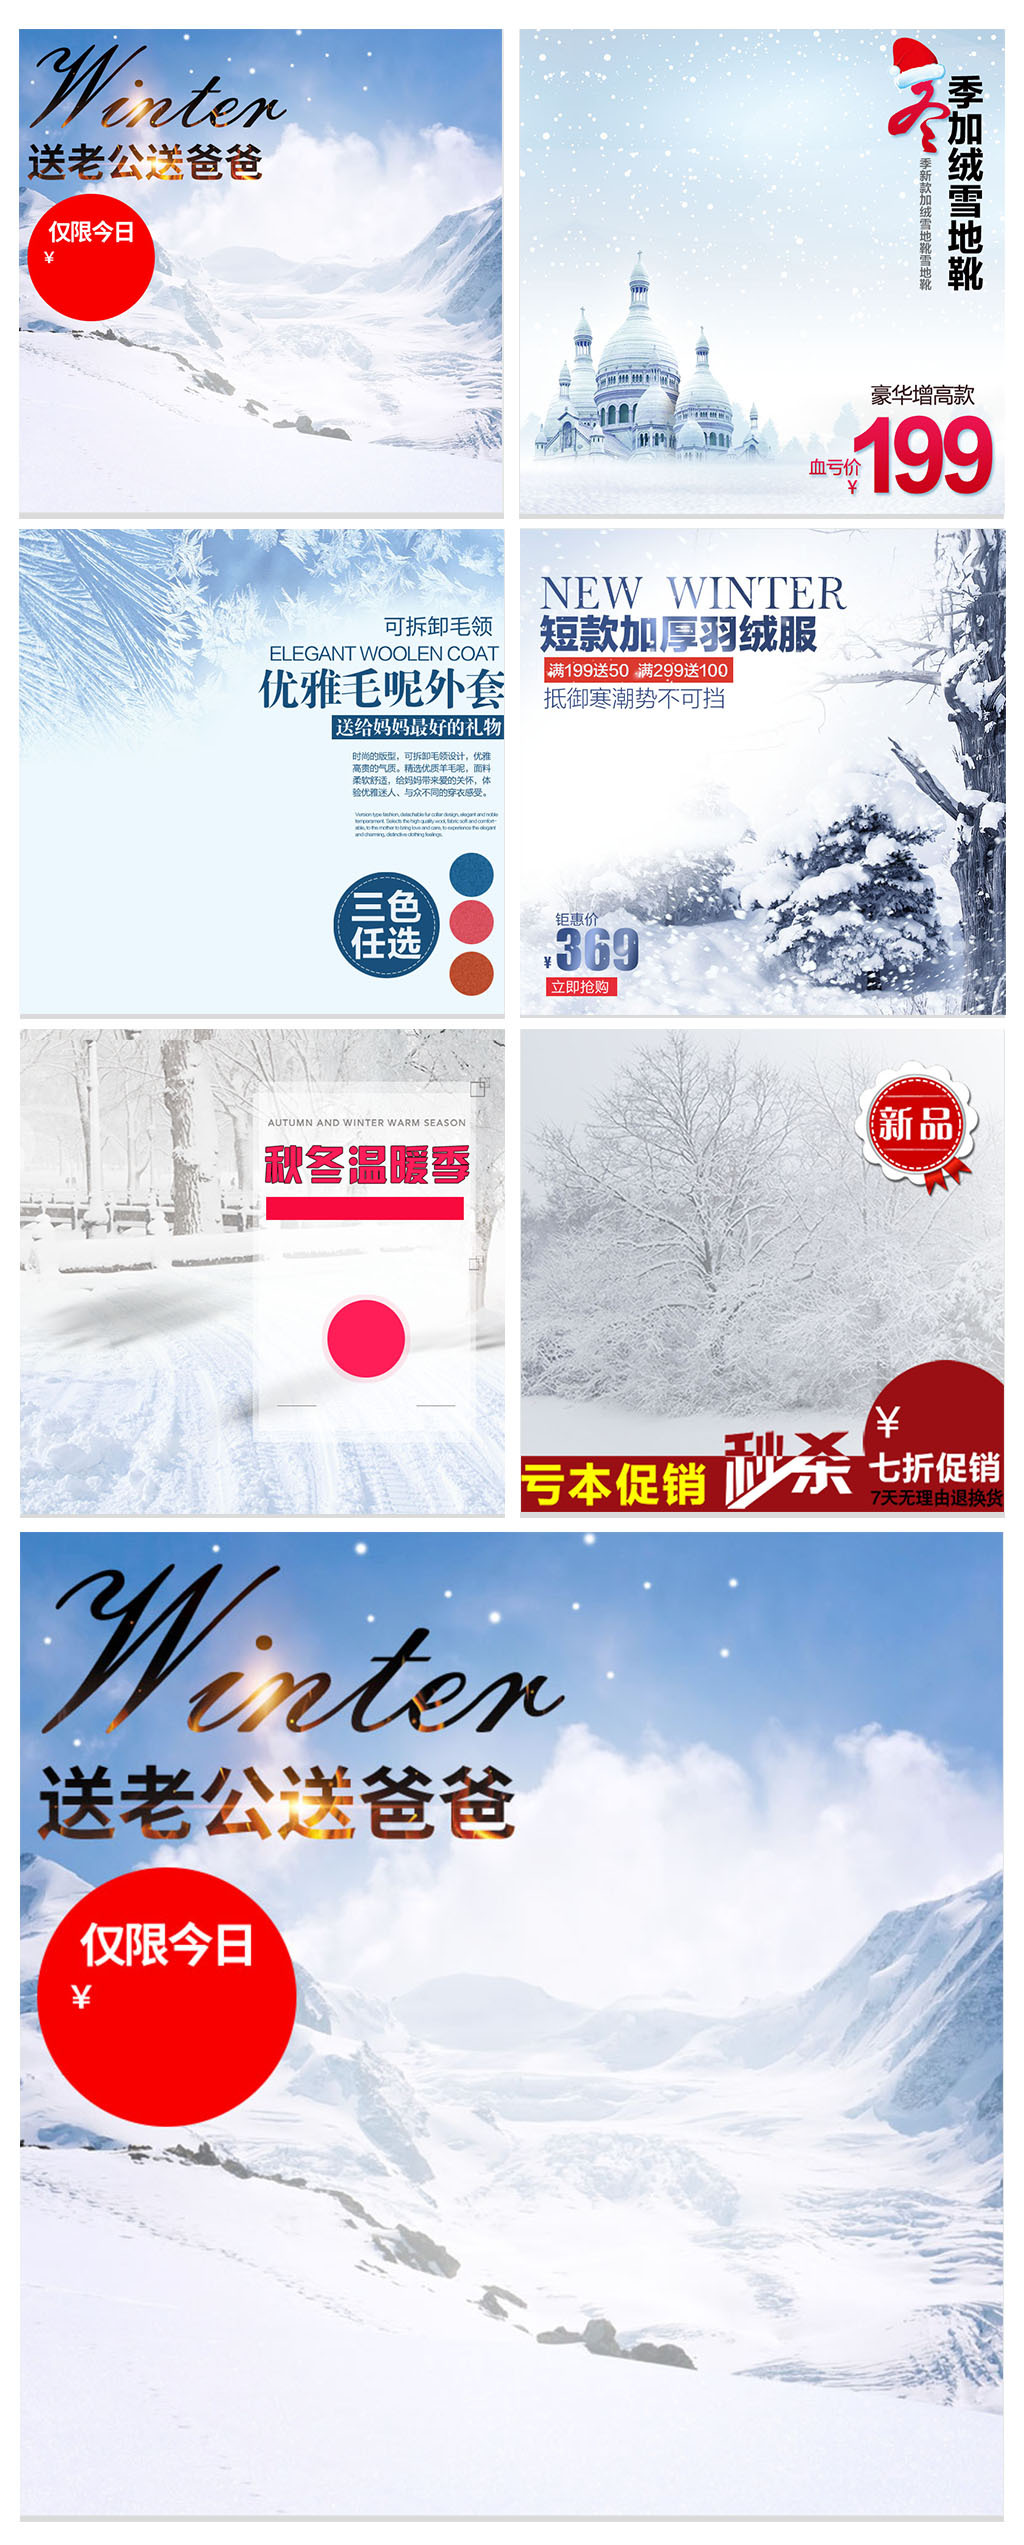 淘宝天猫冬季雪景保暖主图背景素材图片